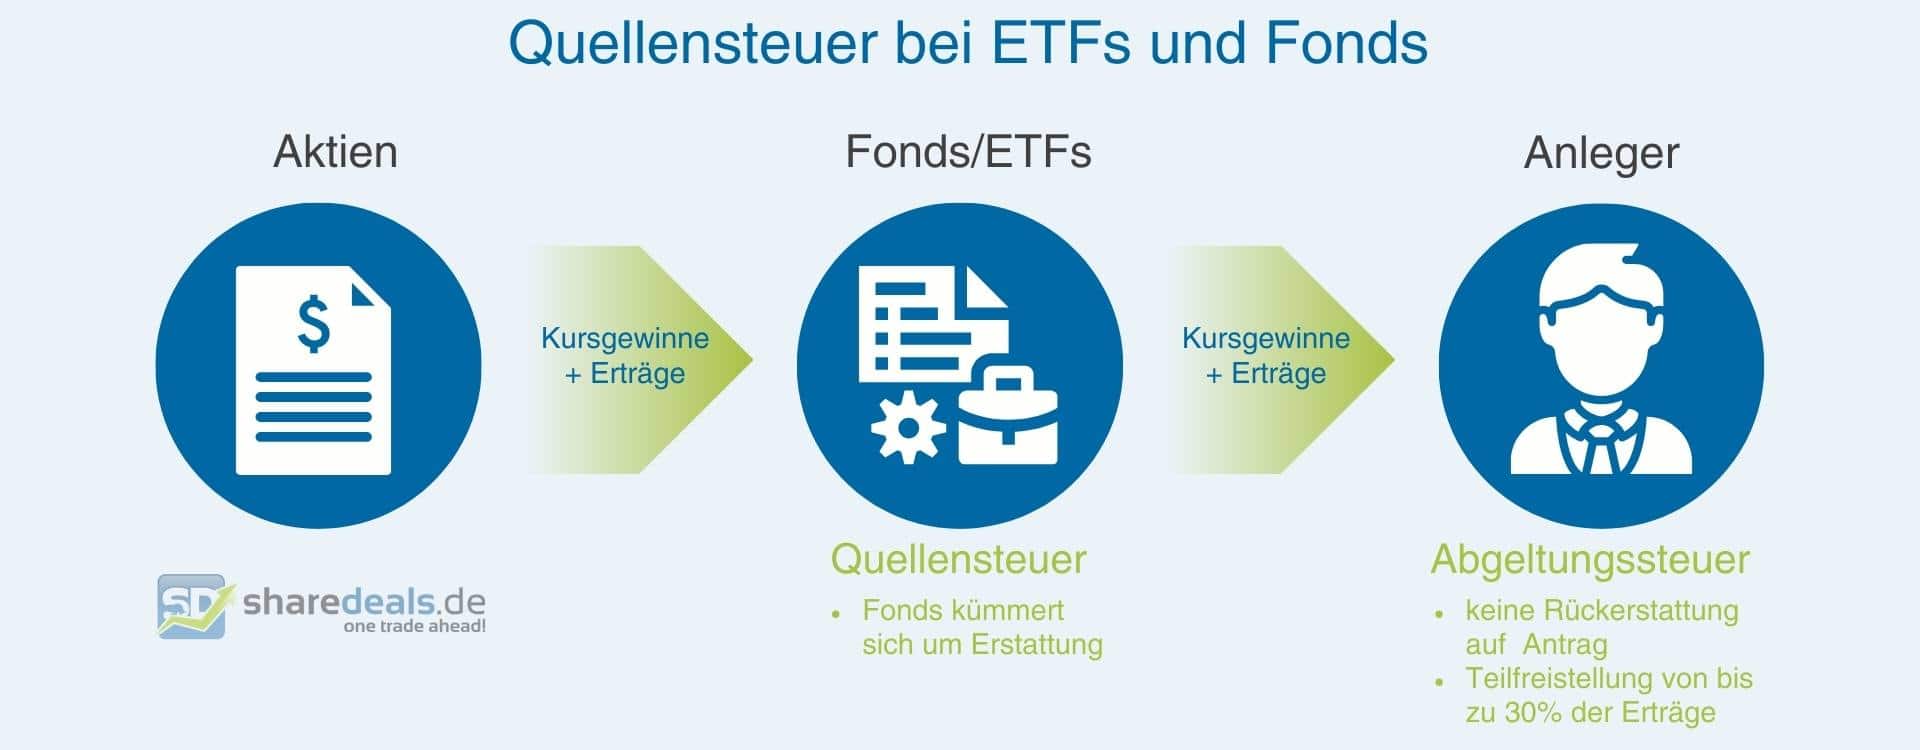 Grafik, die Behandlung von Quellensteuer bei Fonds und ETFs zeigt